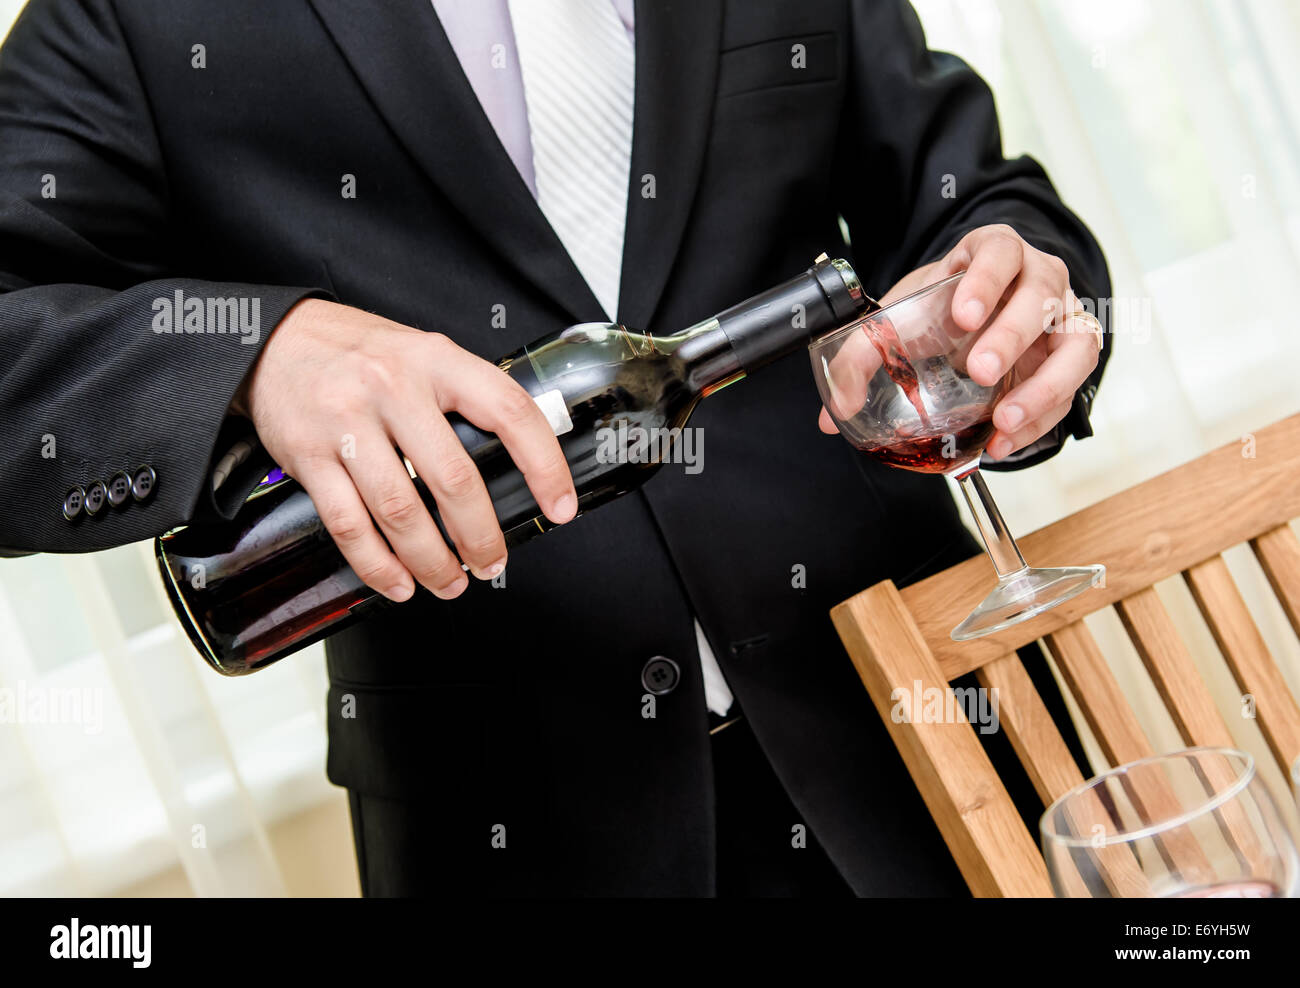 На вине себе поклялась. Мужчина наливает вино в бокал. Мужчина наливает вино. Мужчина с бутылкой в руке. Бутылка шампанского в руке.